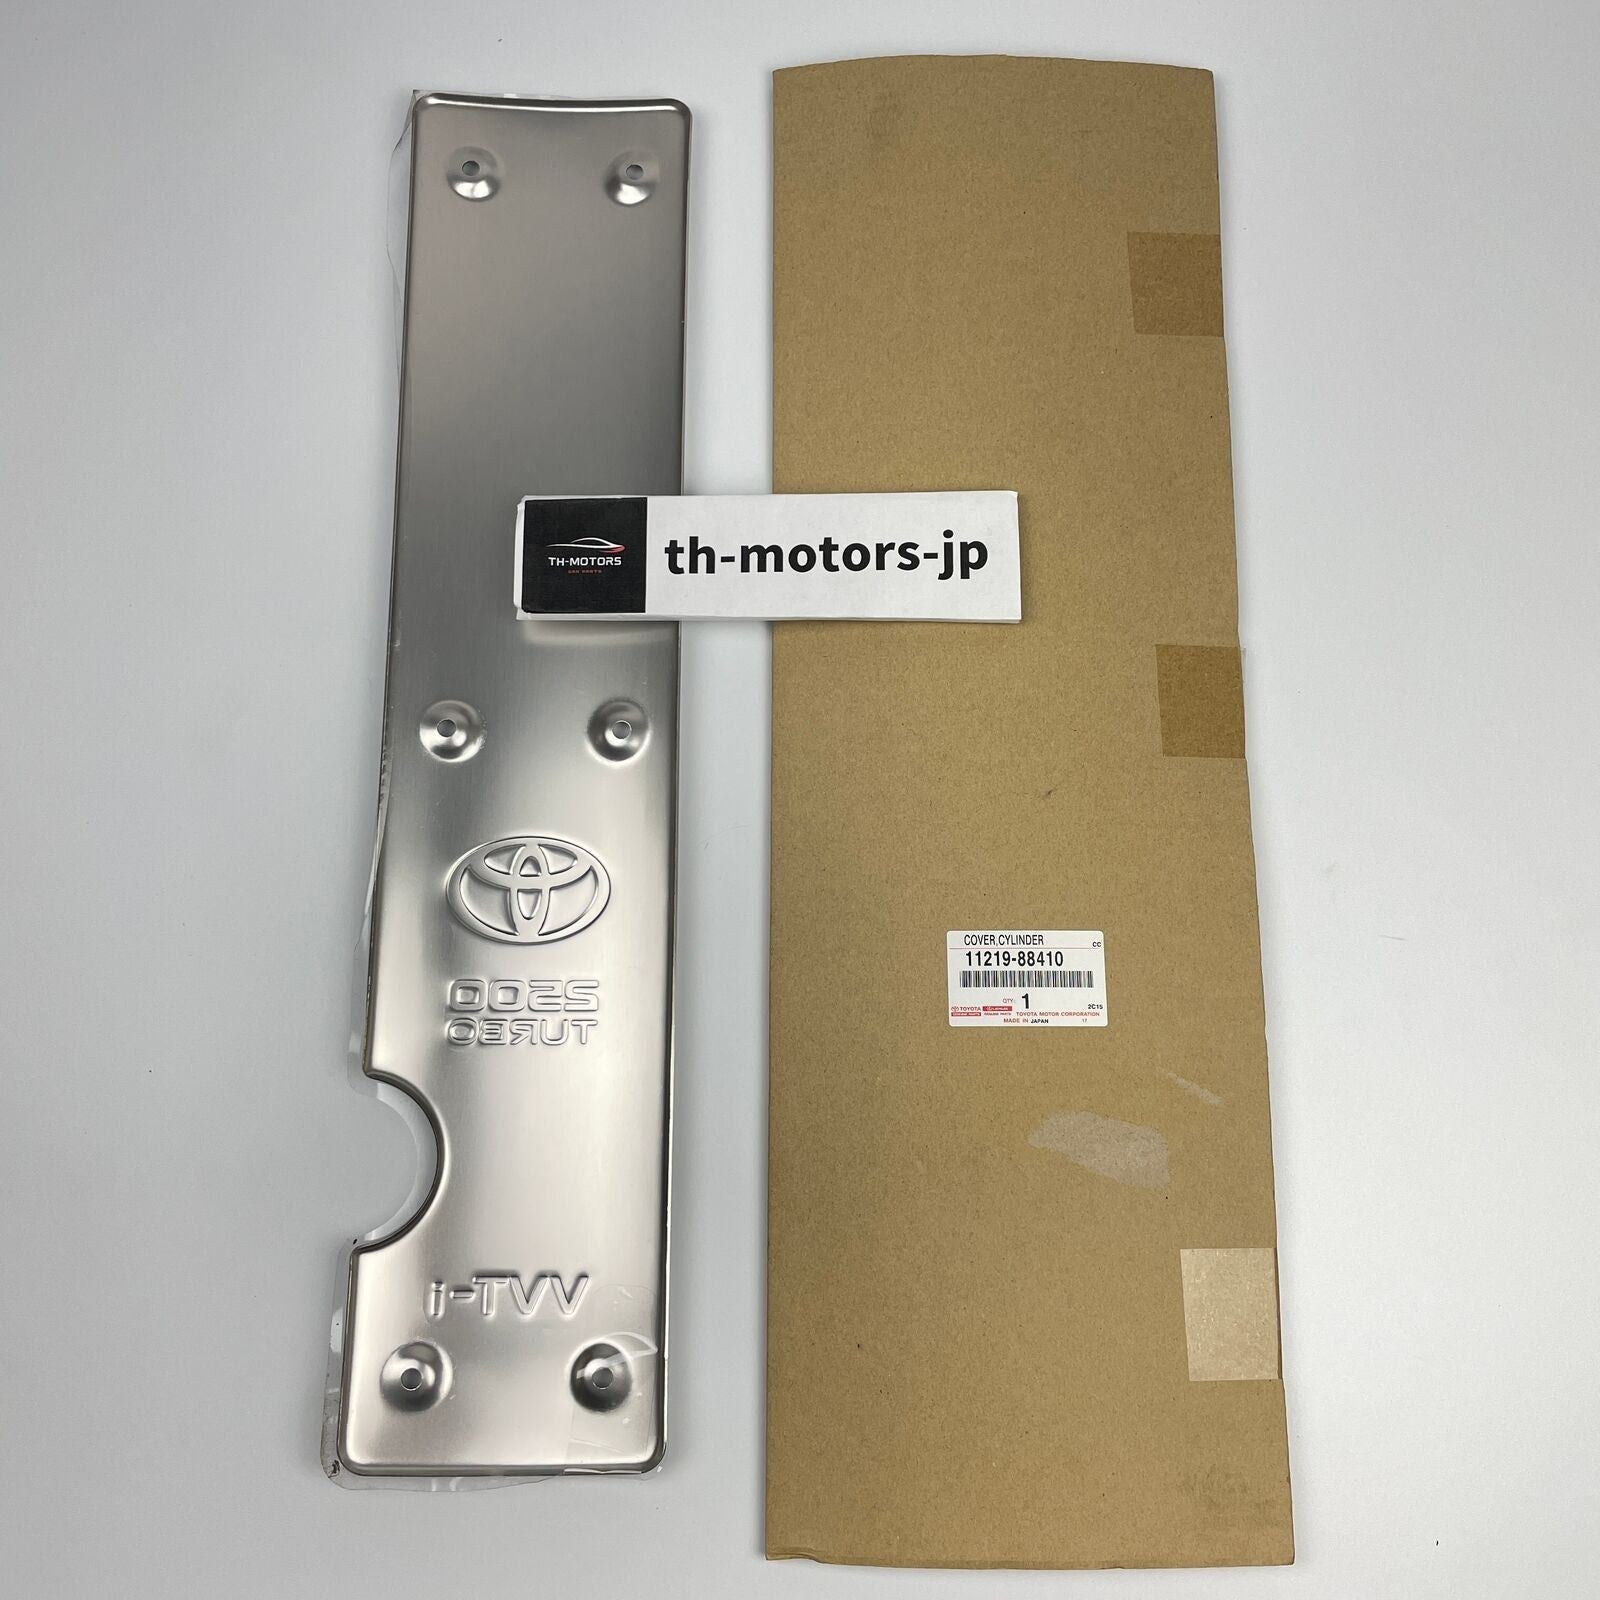 JZX100 – th-motors-jp